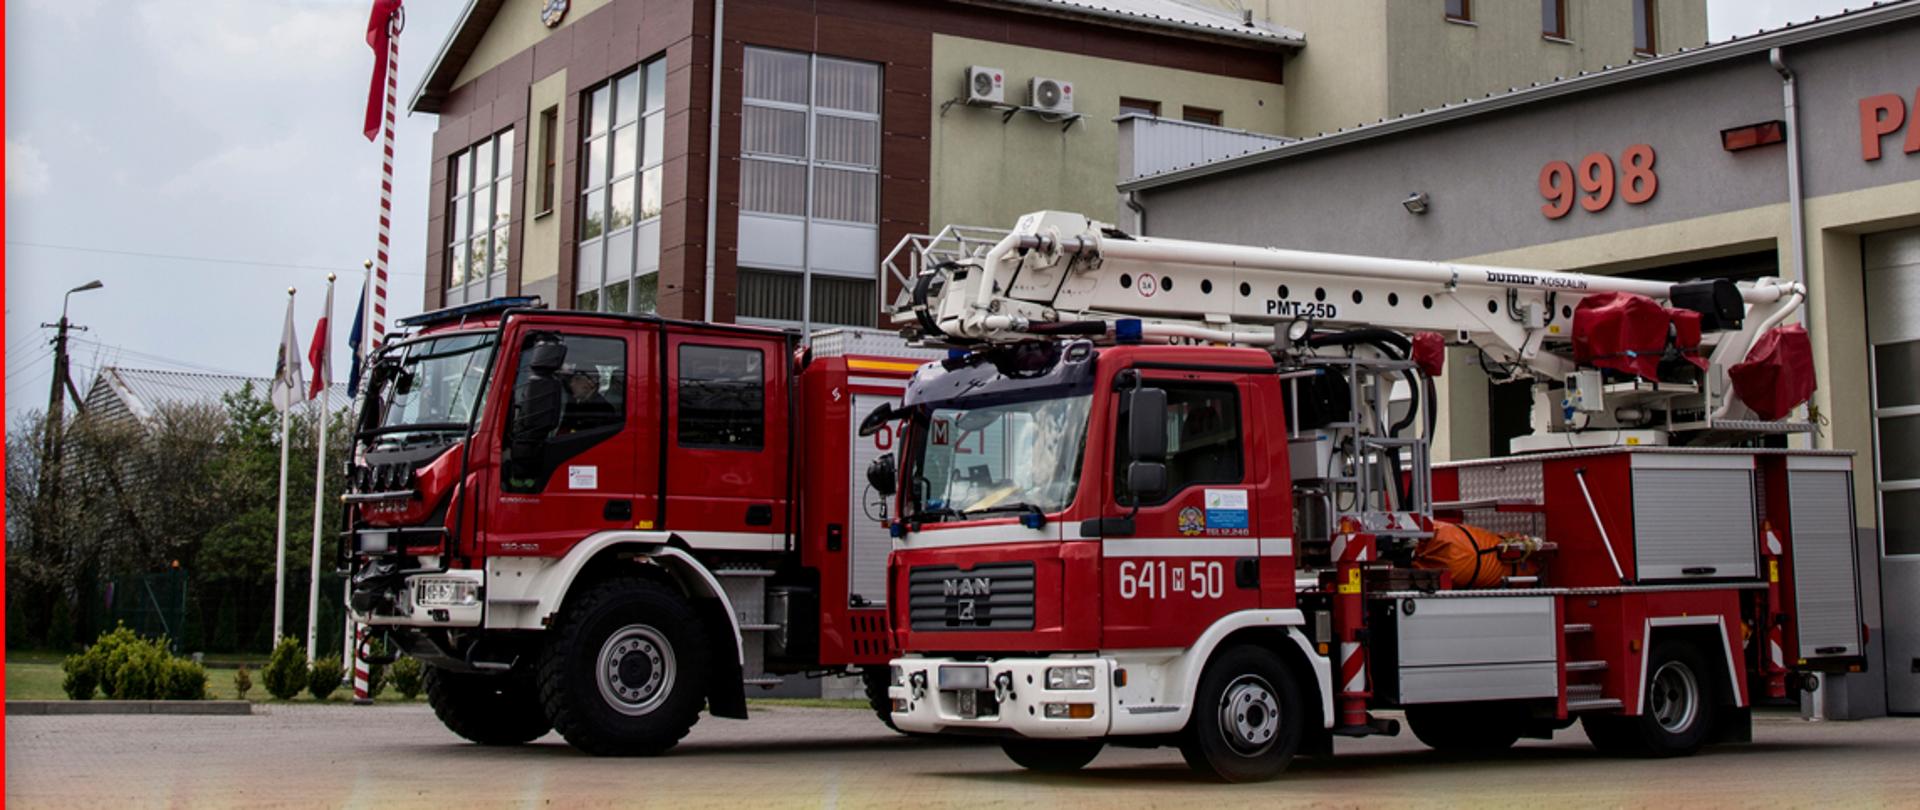 Grafika prezentująca św. Floriana gaszącego pożar oraz dwa samochody strażackie na tle sokołowskiej Komendy Powiatowej Państwowej Straży Pożarnej wraz z białym napisem "Dziękujemy za służbę!" umieszczonym na dole